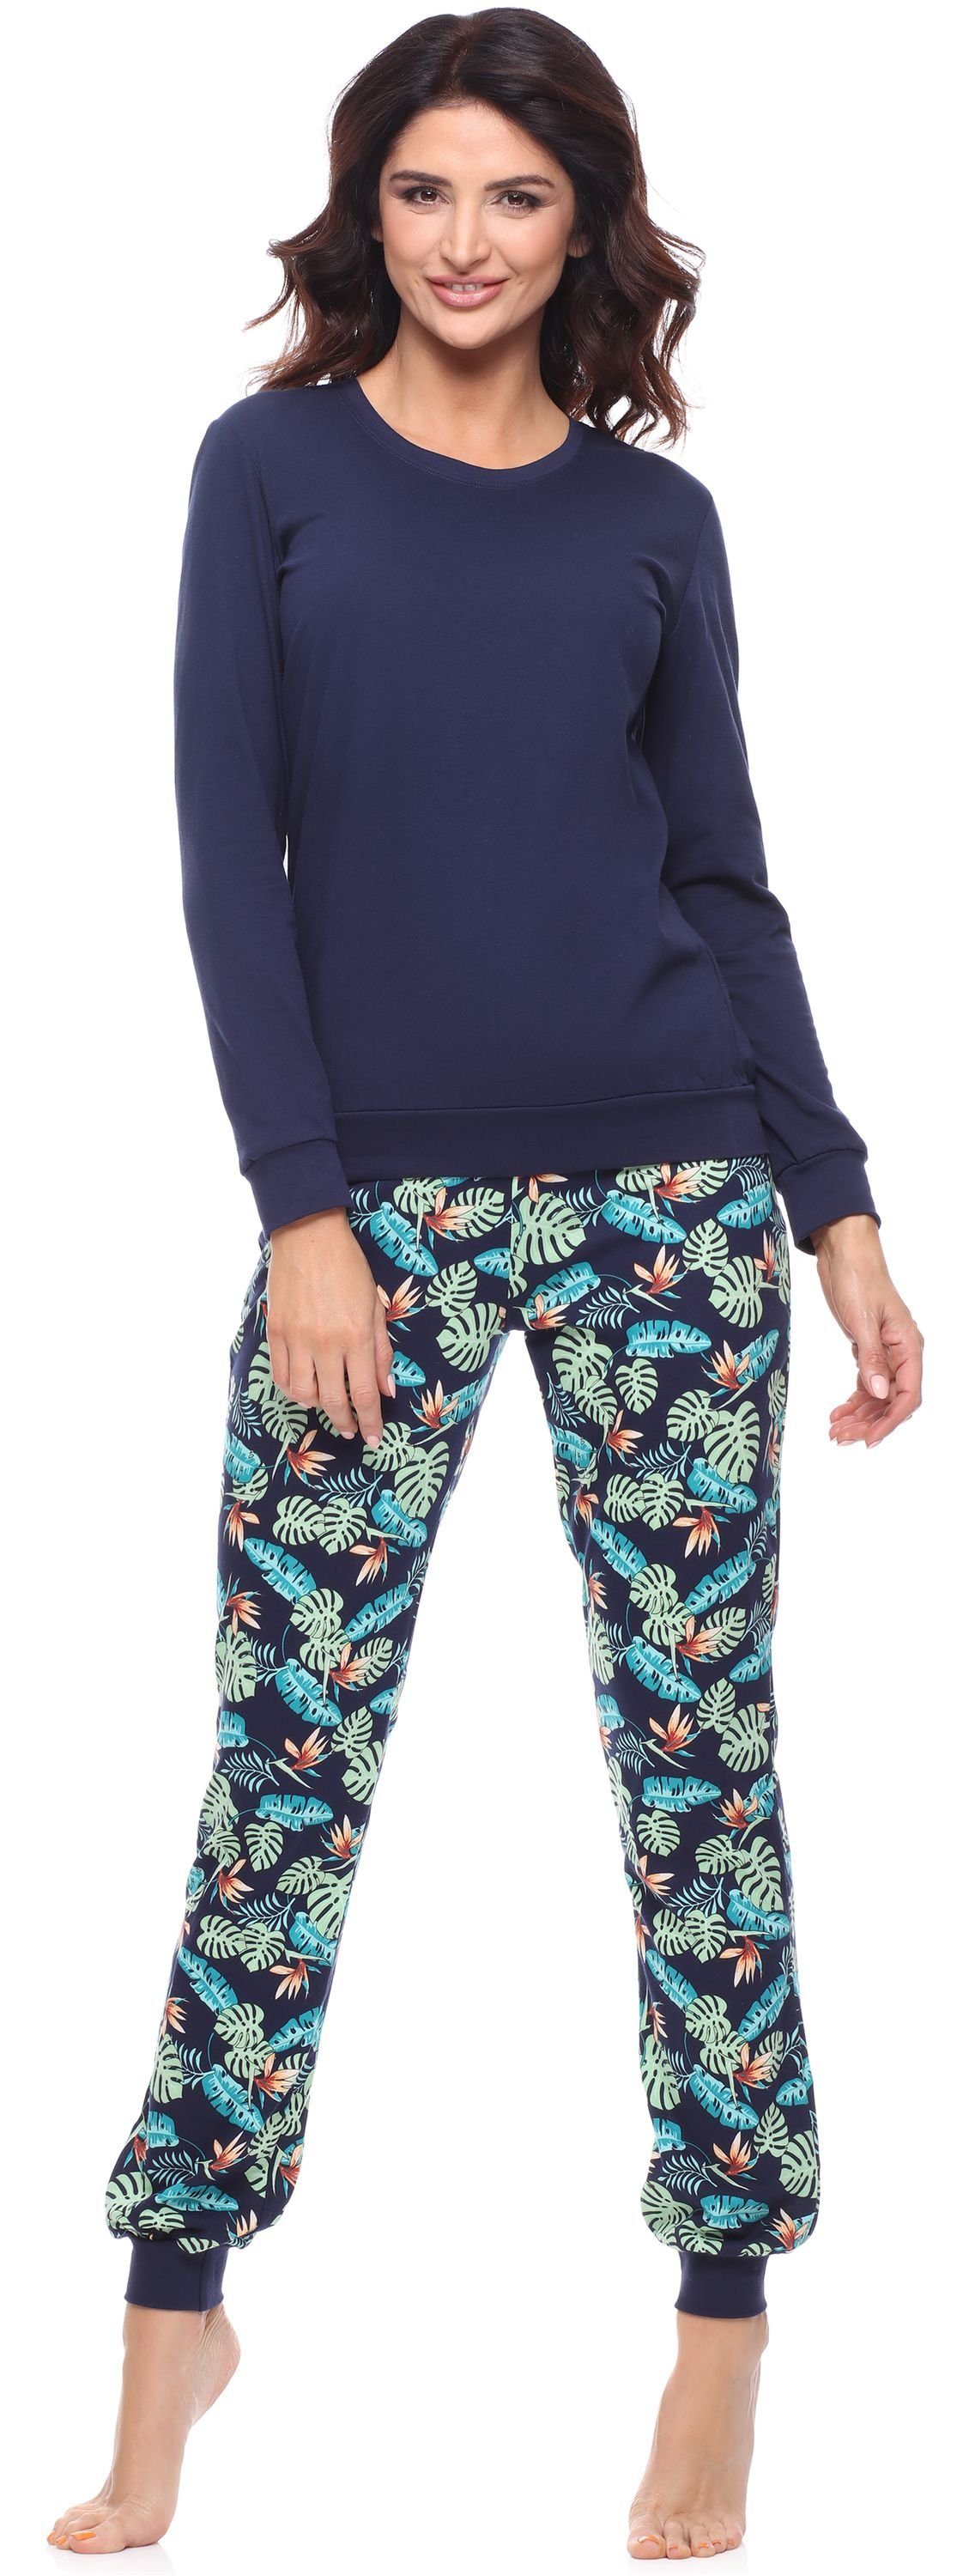 Zweiteiler Schlafanzug Pyjama mit Damen lang bunt Merry Muster Style Schlafanzug MS10-268 Marineblau/Blätter